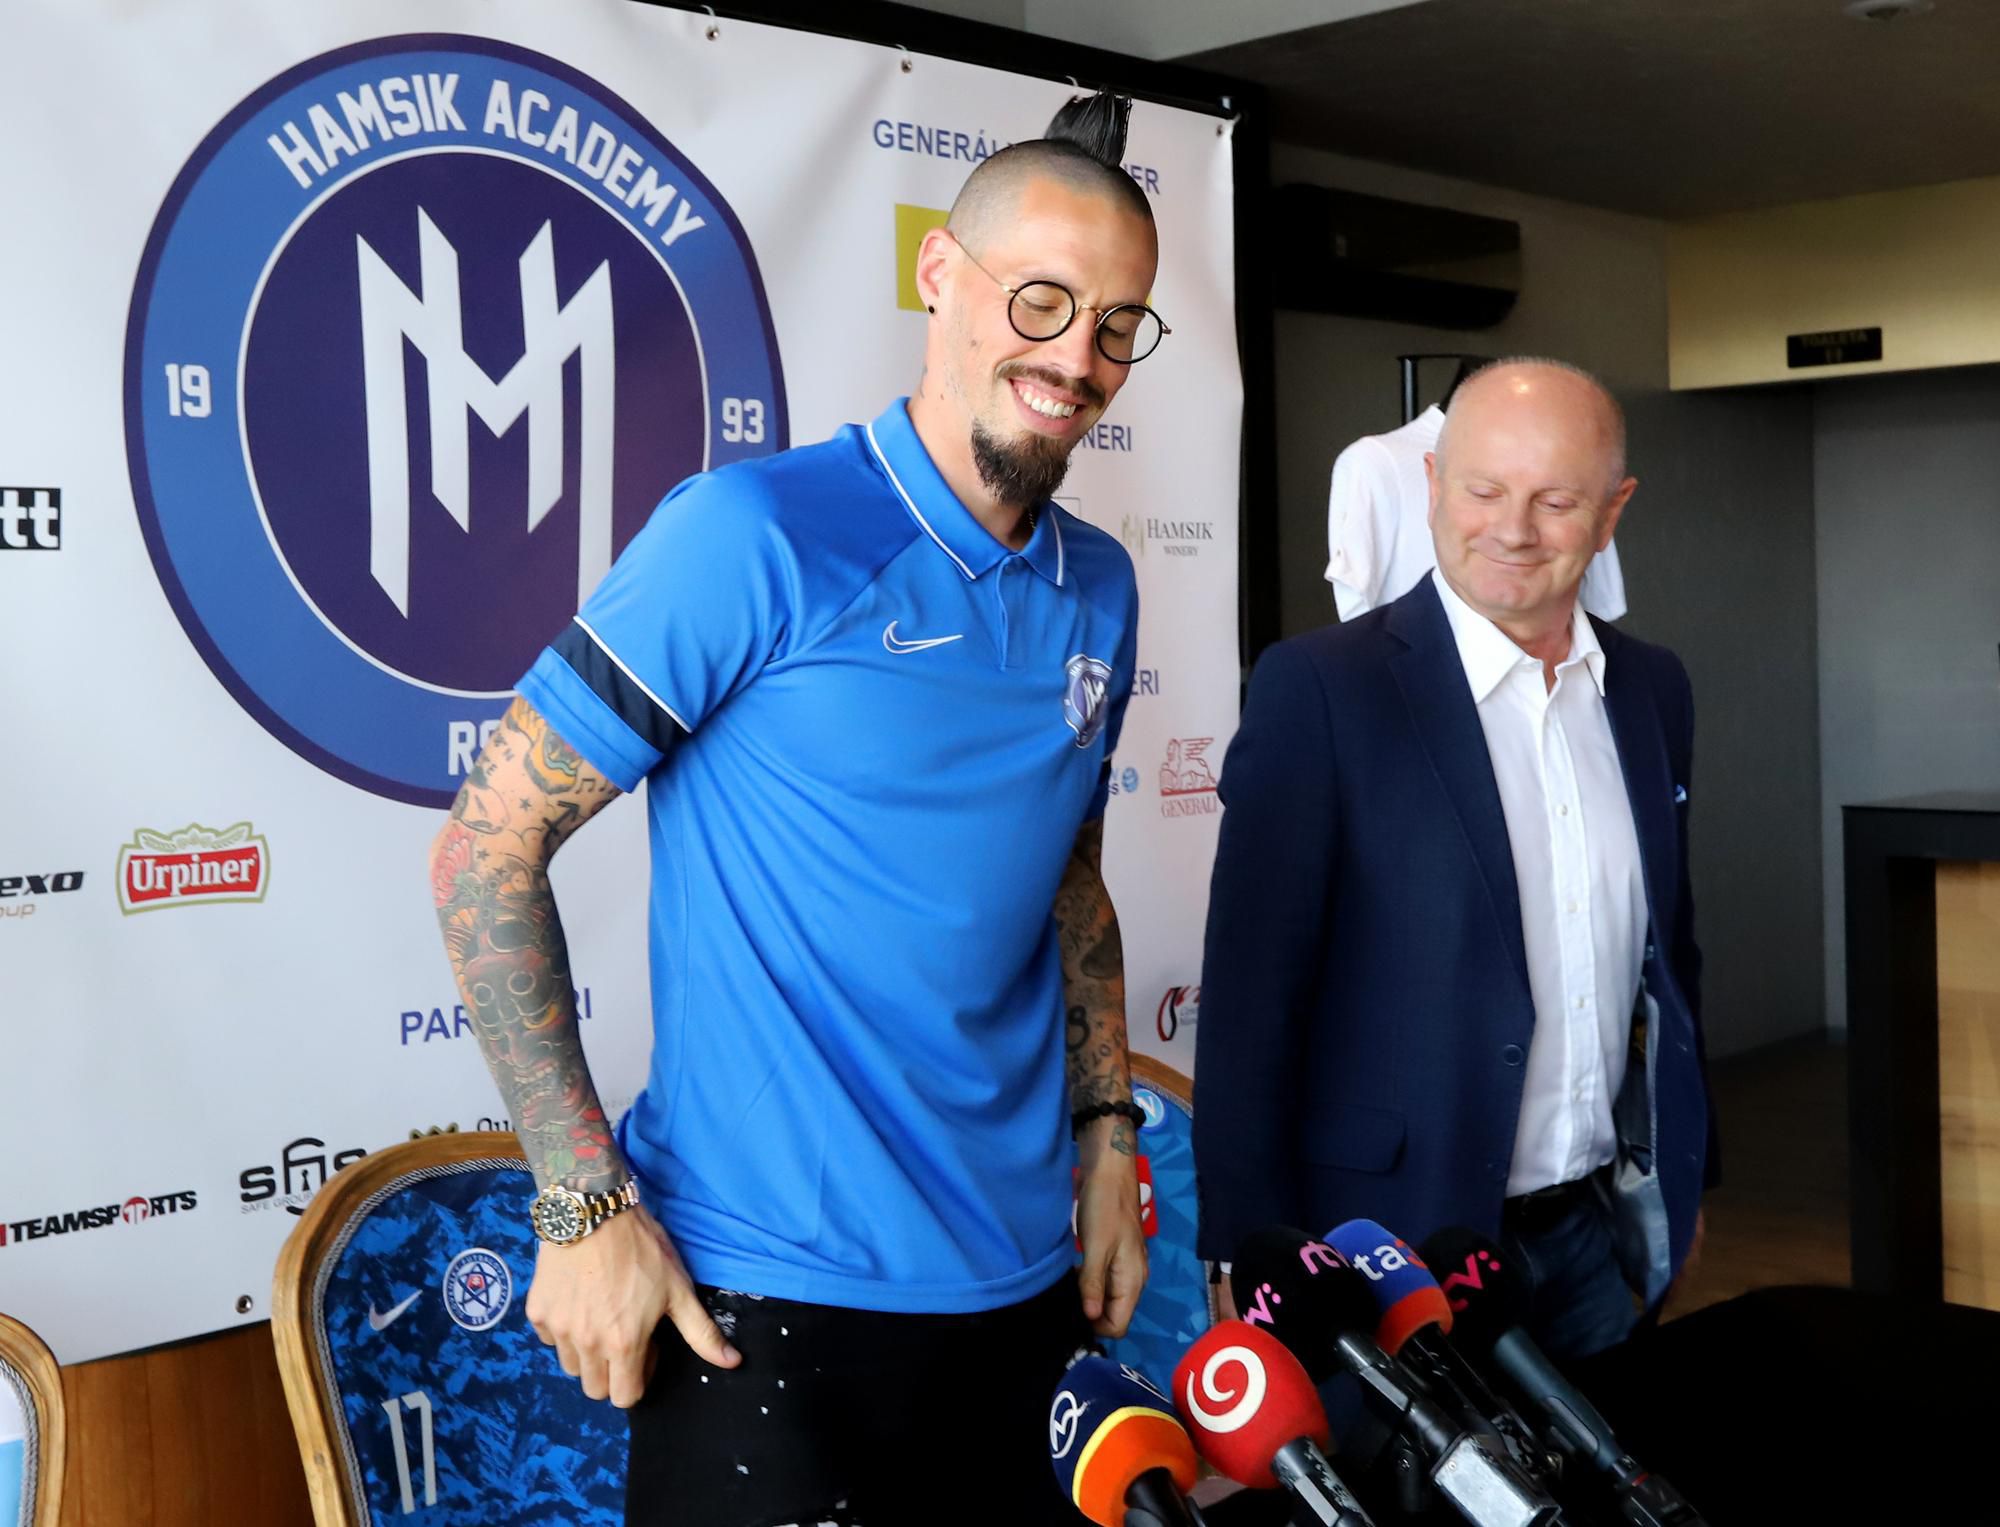 Tlačová konferencia so slovenským futbalistom Marekom Hamšíkom na tému predstavenie RSC Hamsik Academy